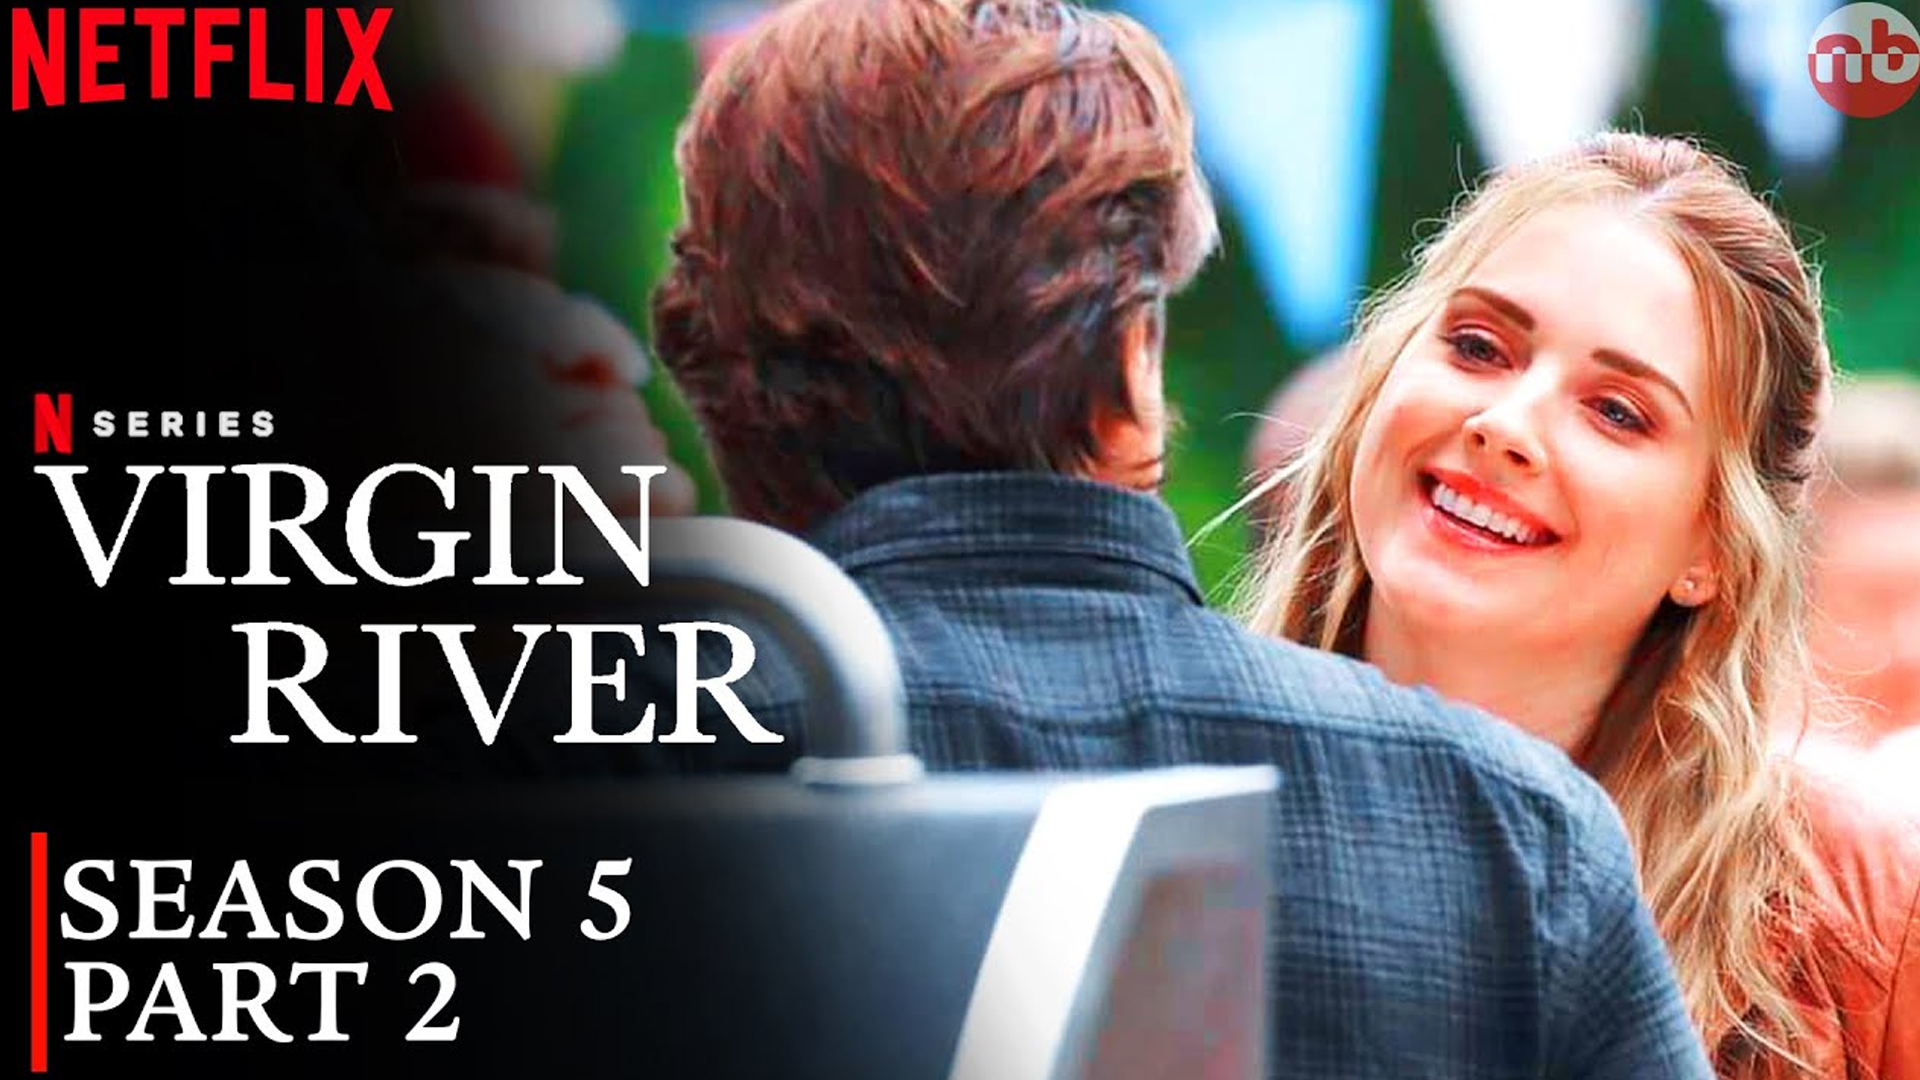 Virgin River Season 5 Part 2 Is Coming Soon?